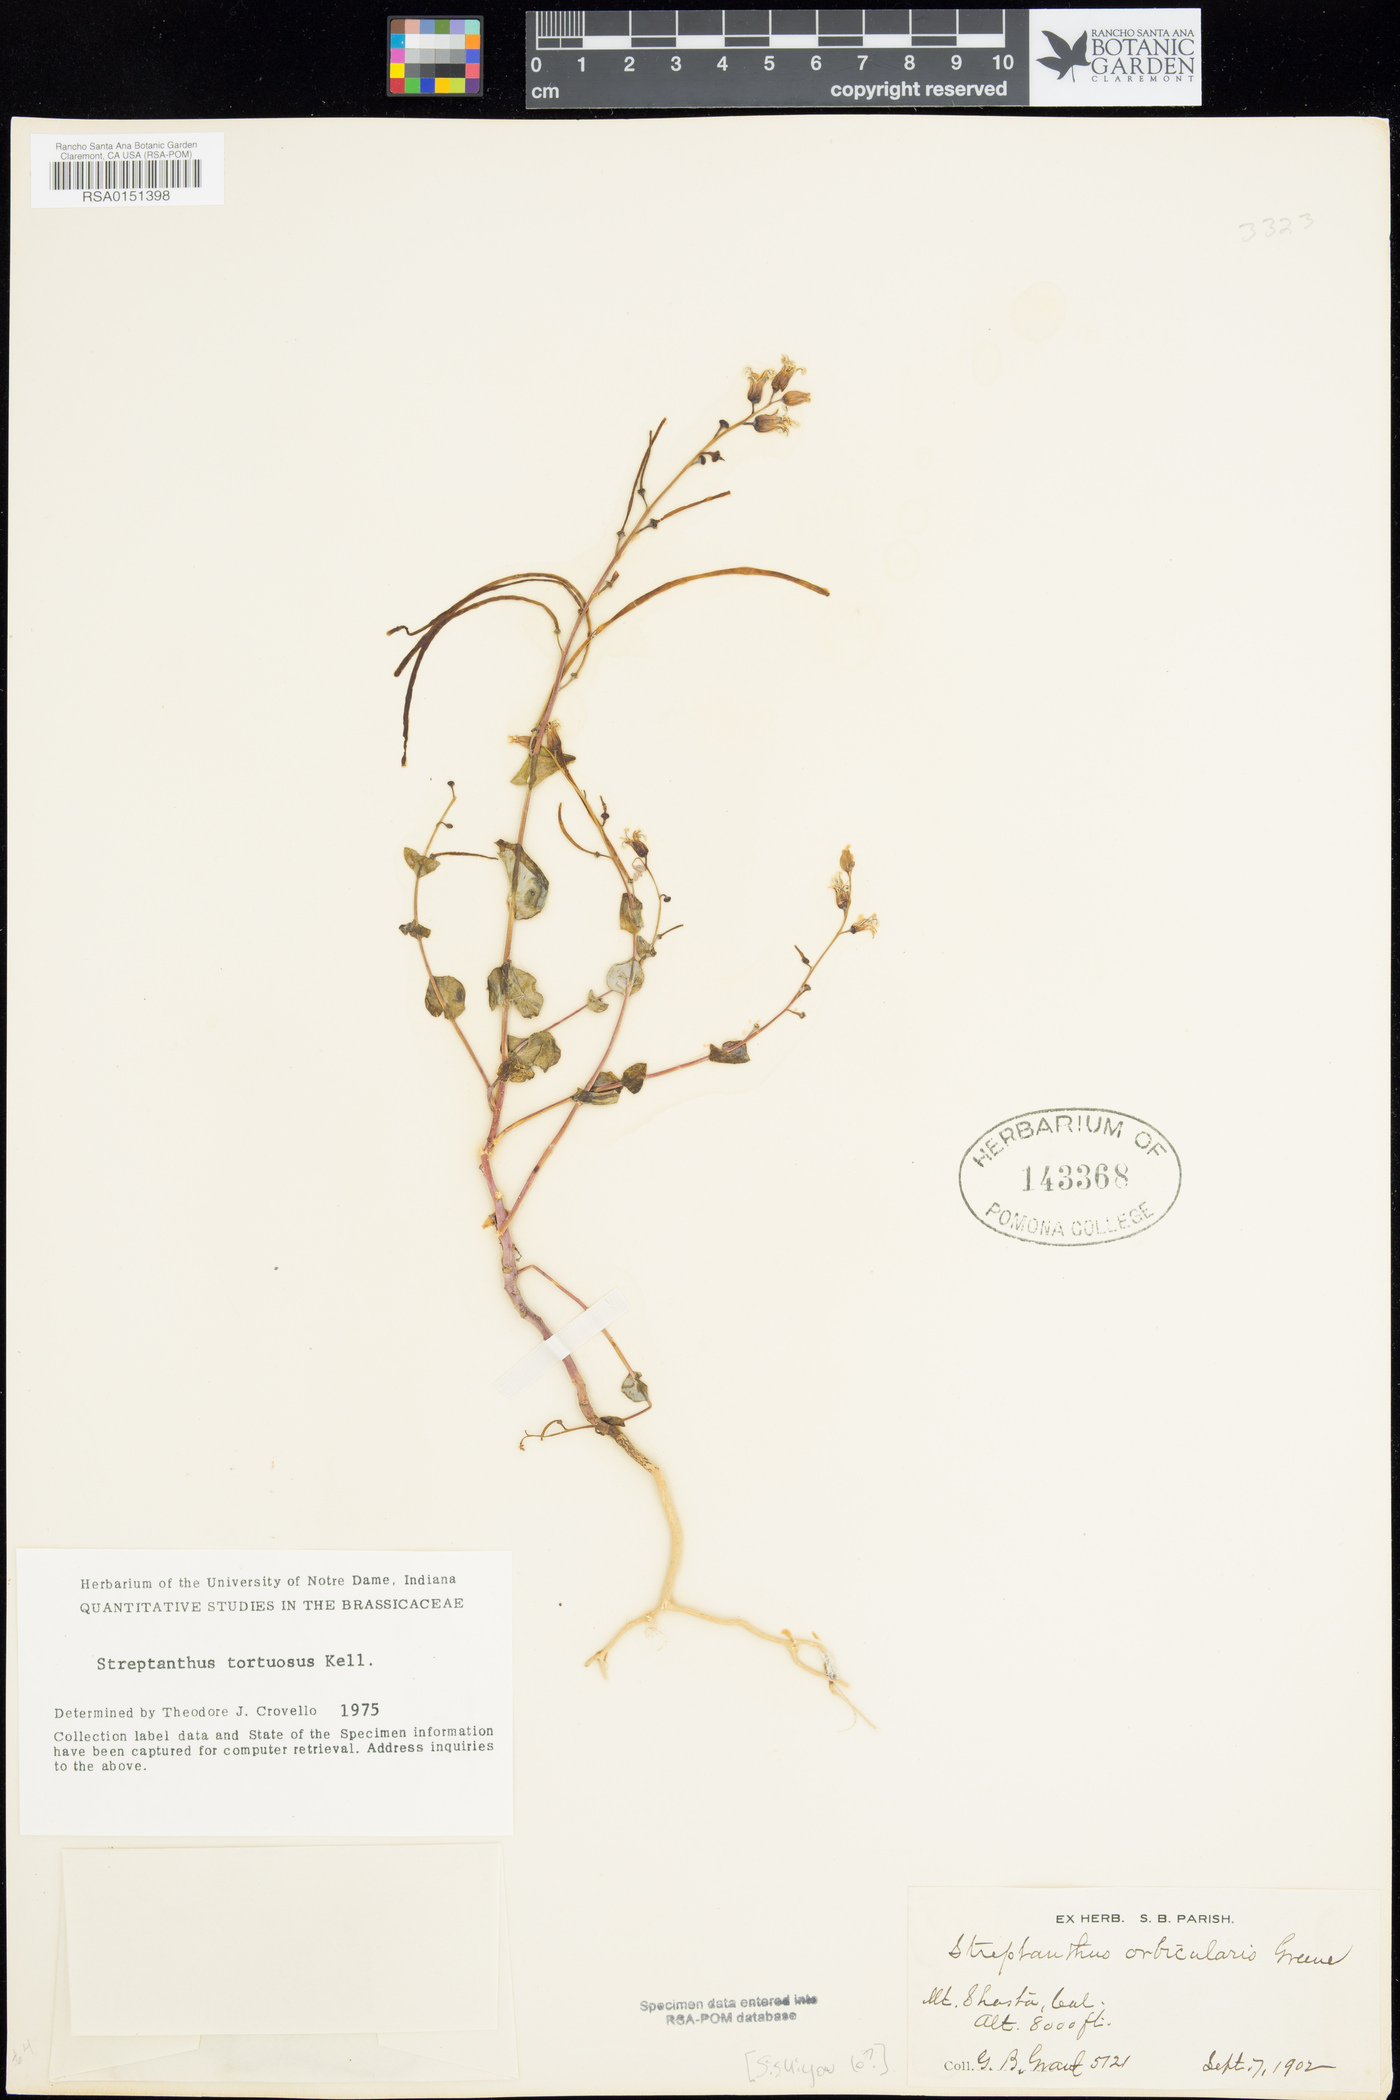 Streptanthus orbiculatus image